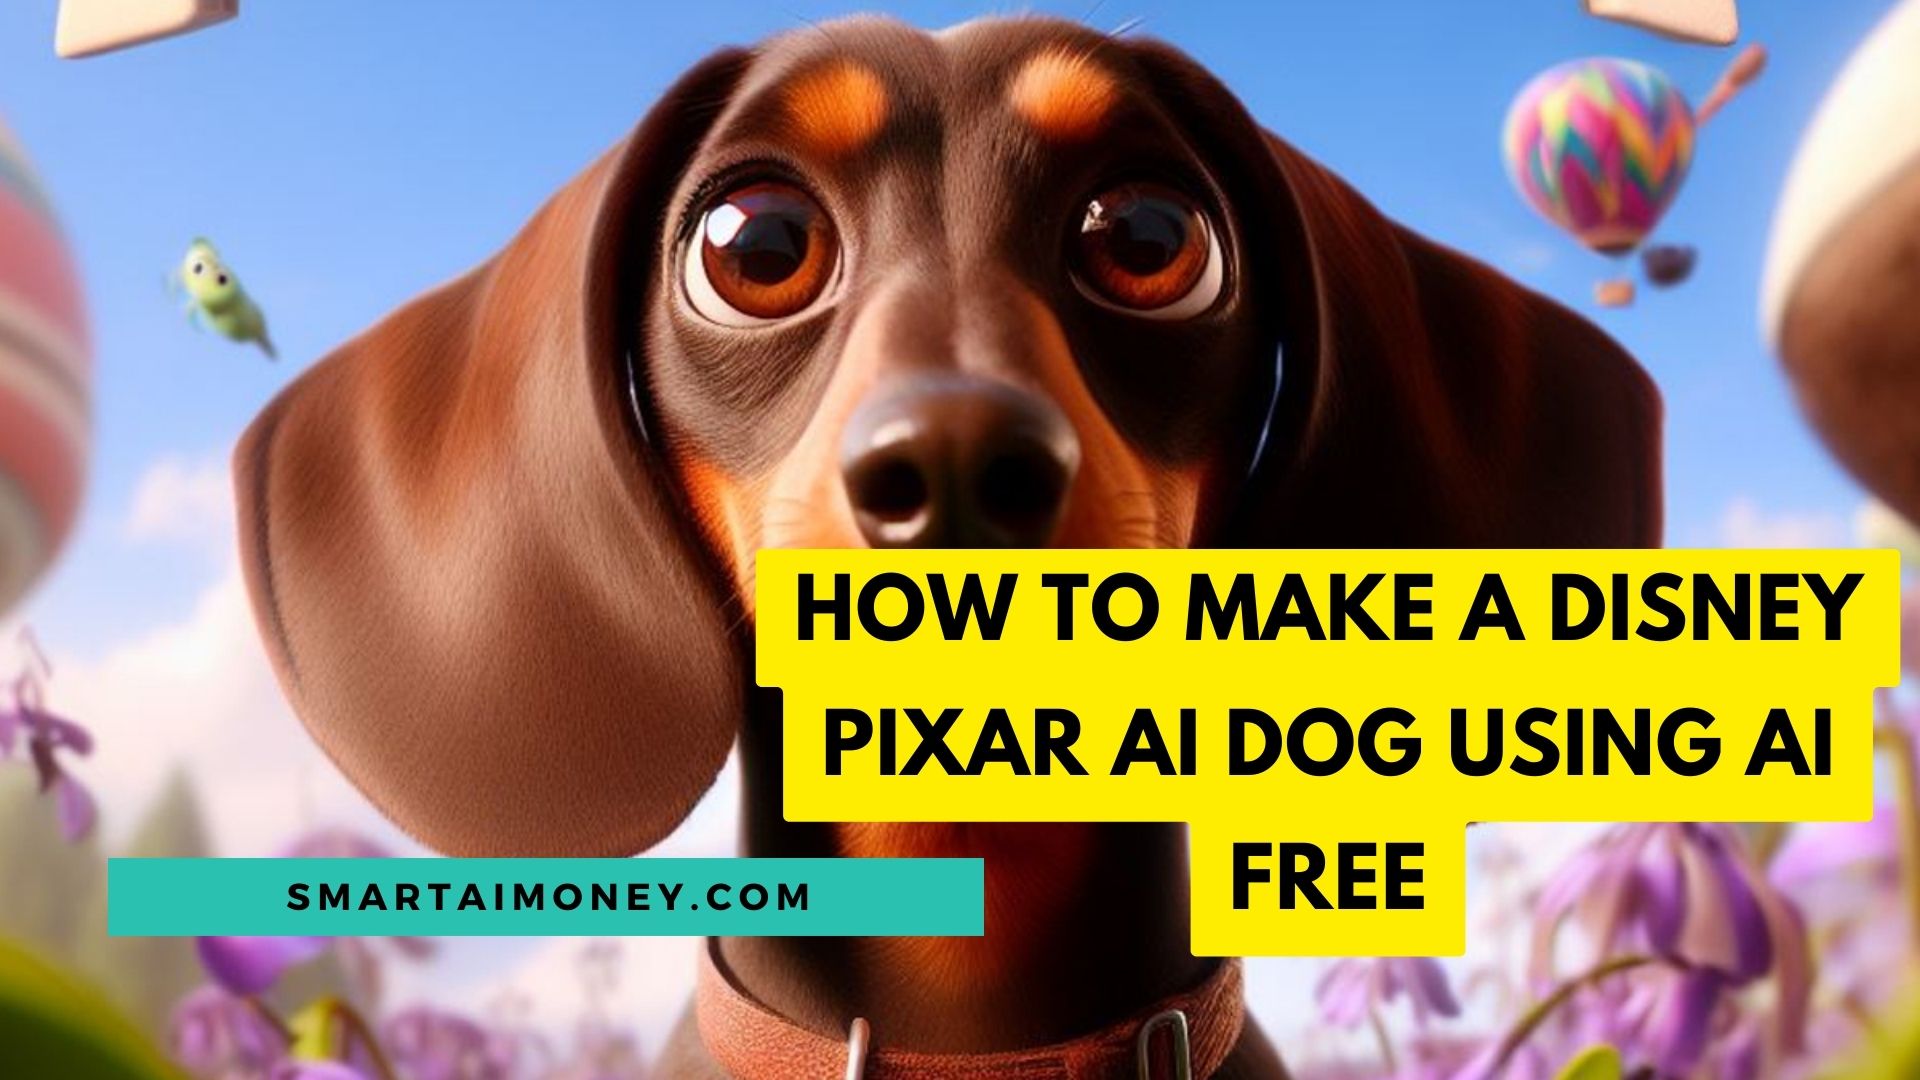 How To Make a Disney Pixar AI Dog Using AI FREE